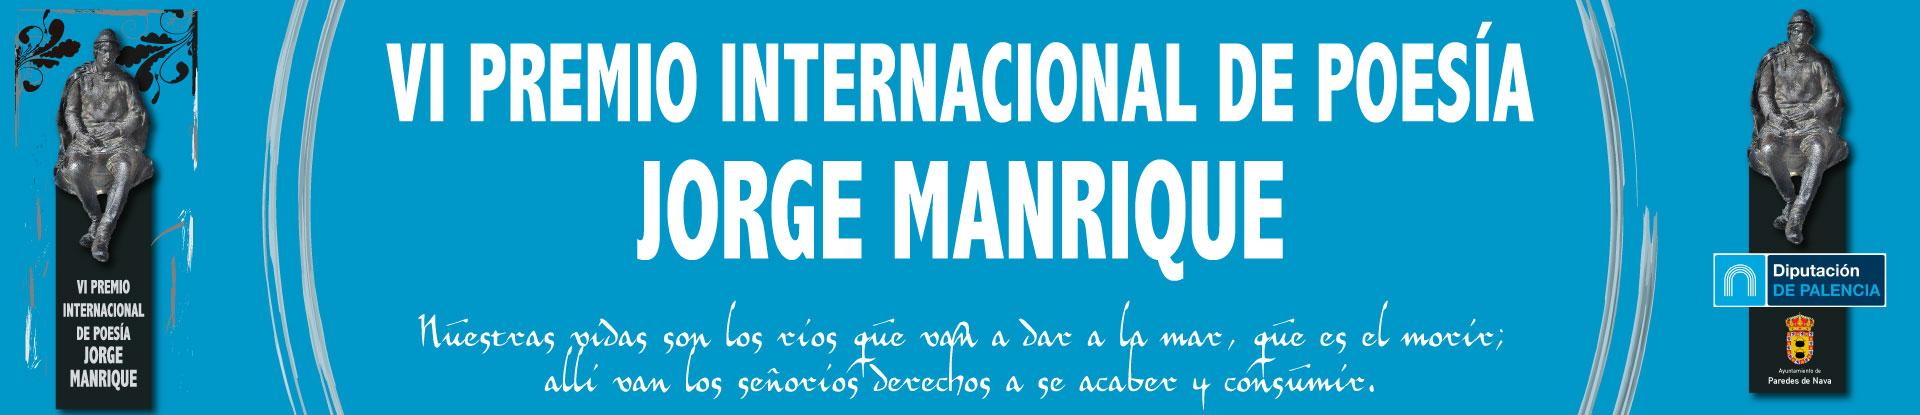 VI PREMIO INTERNACIONAL DE POESÍA JORGE MANRIQUE